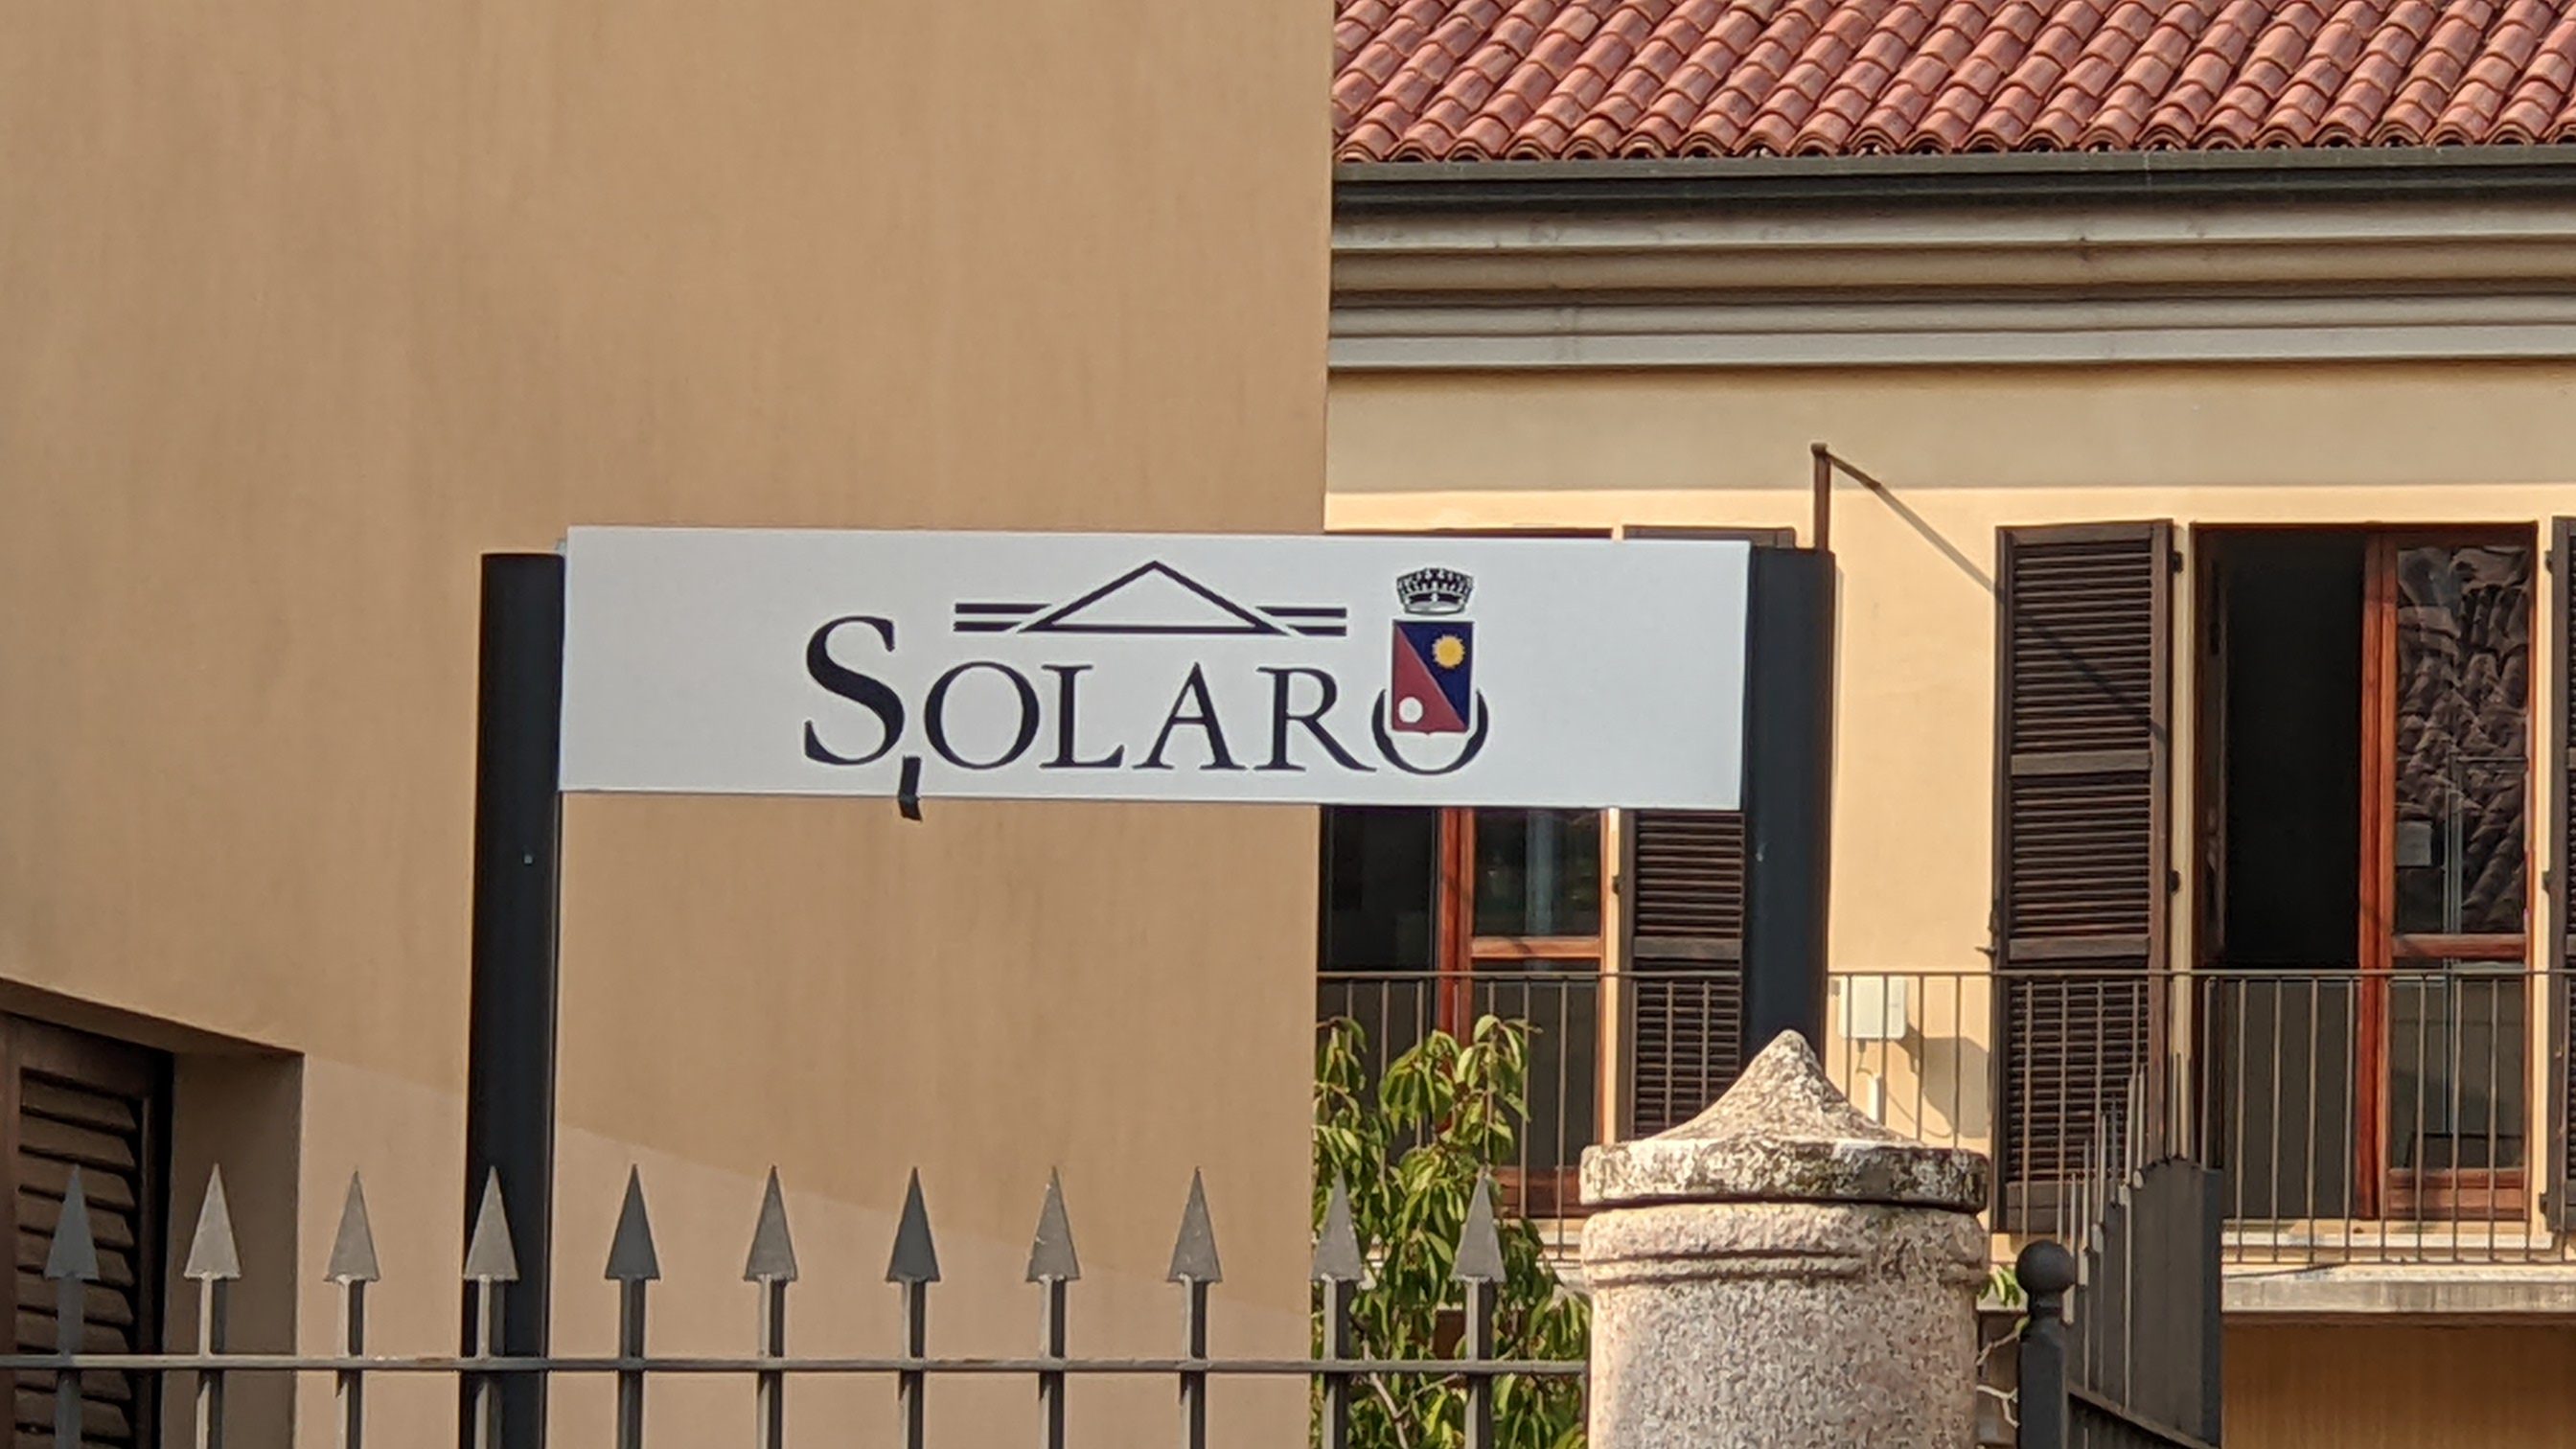 Solaro inaugura il nuovo bar sociale in piazza Cadorna: appuntamento il 14 gennaio